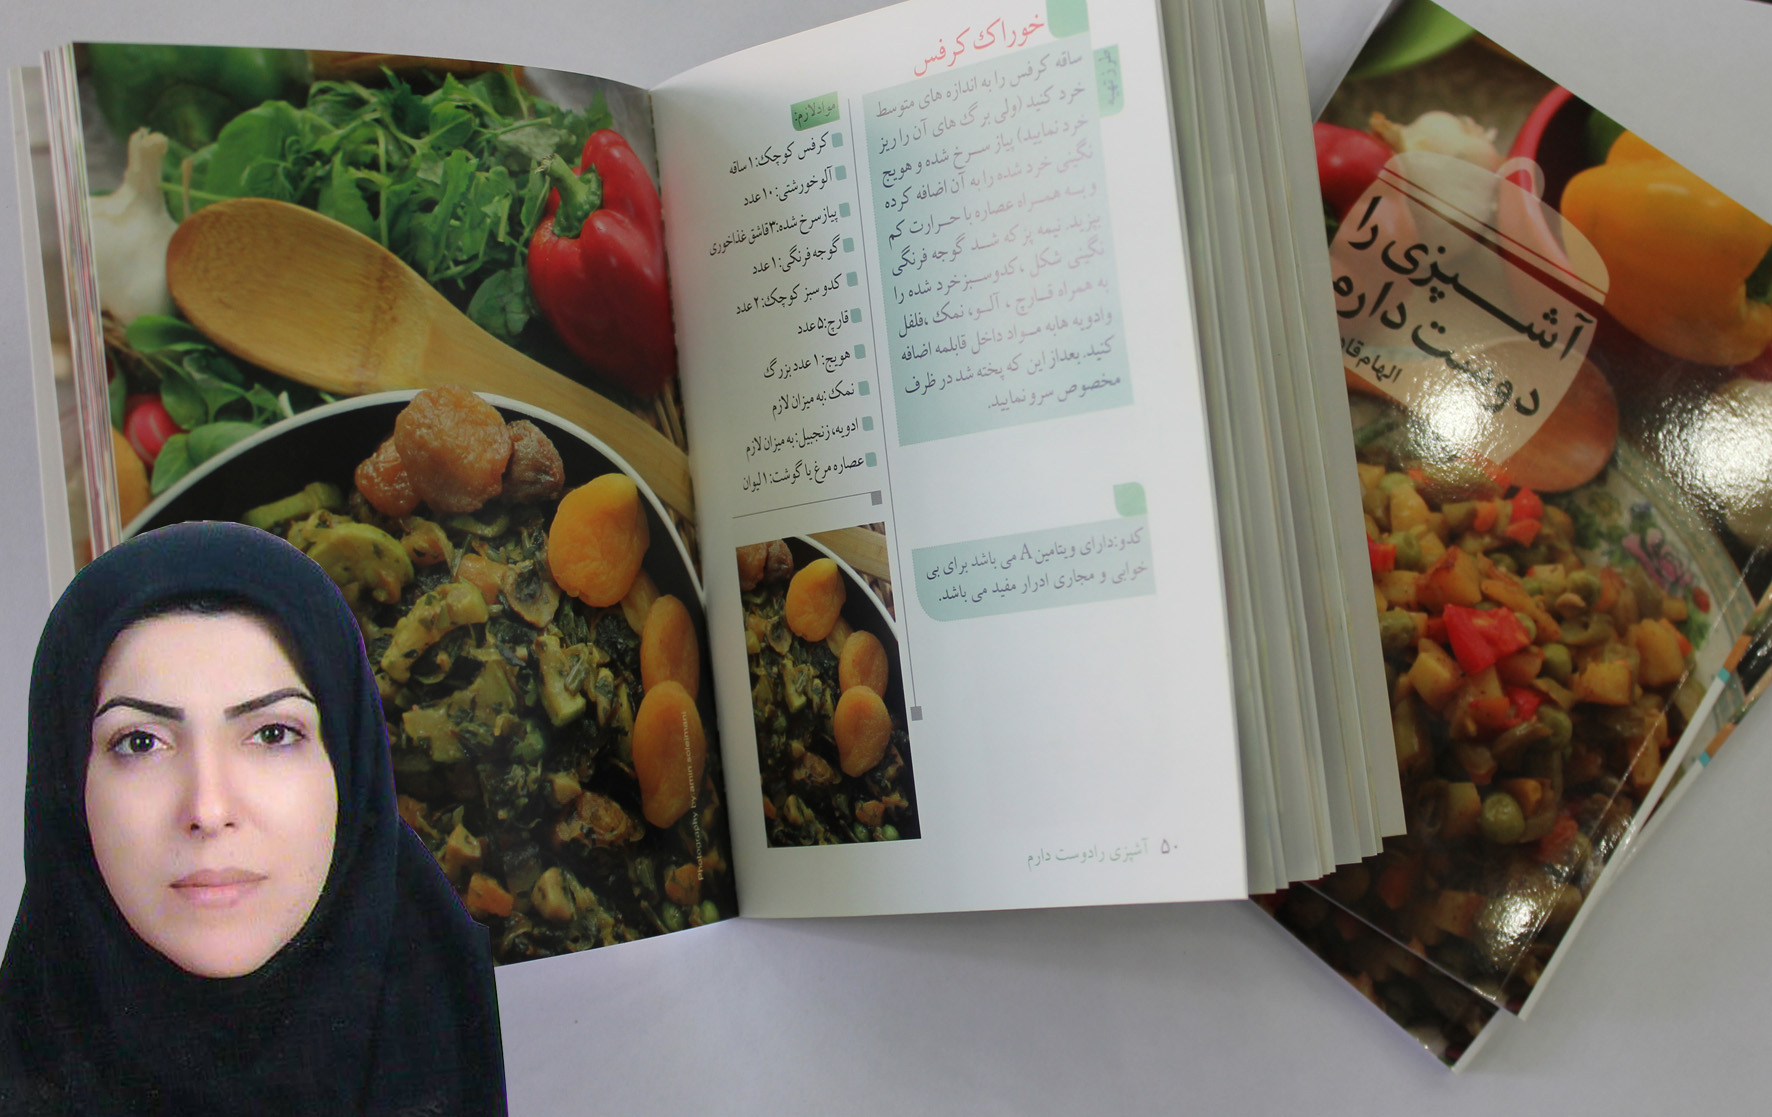 توسط نویسنده نجف آبادی  متفاوت ترین کتاب آشپزی برای دوستداران غذاهای رژیمی نوشته شد